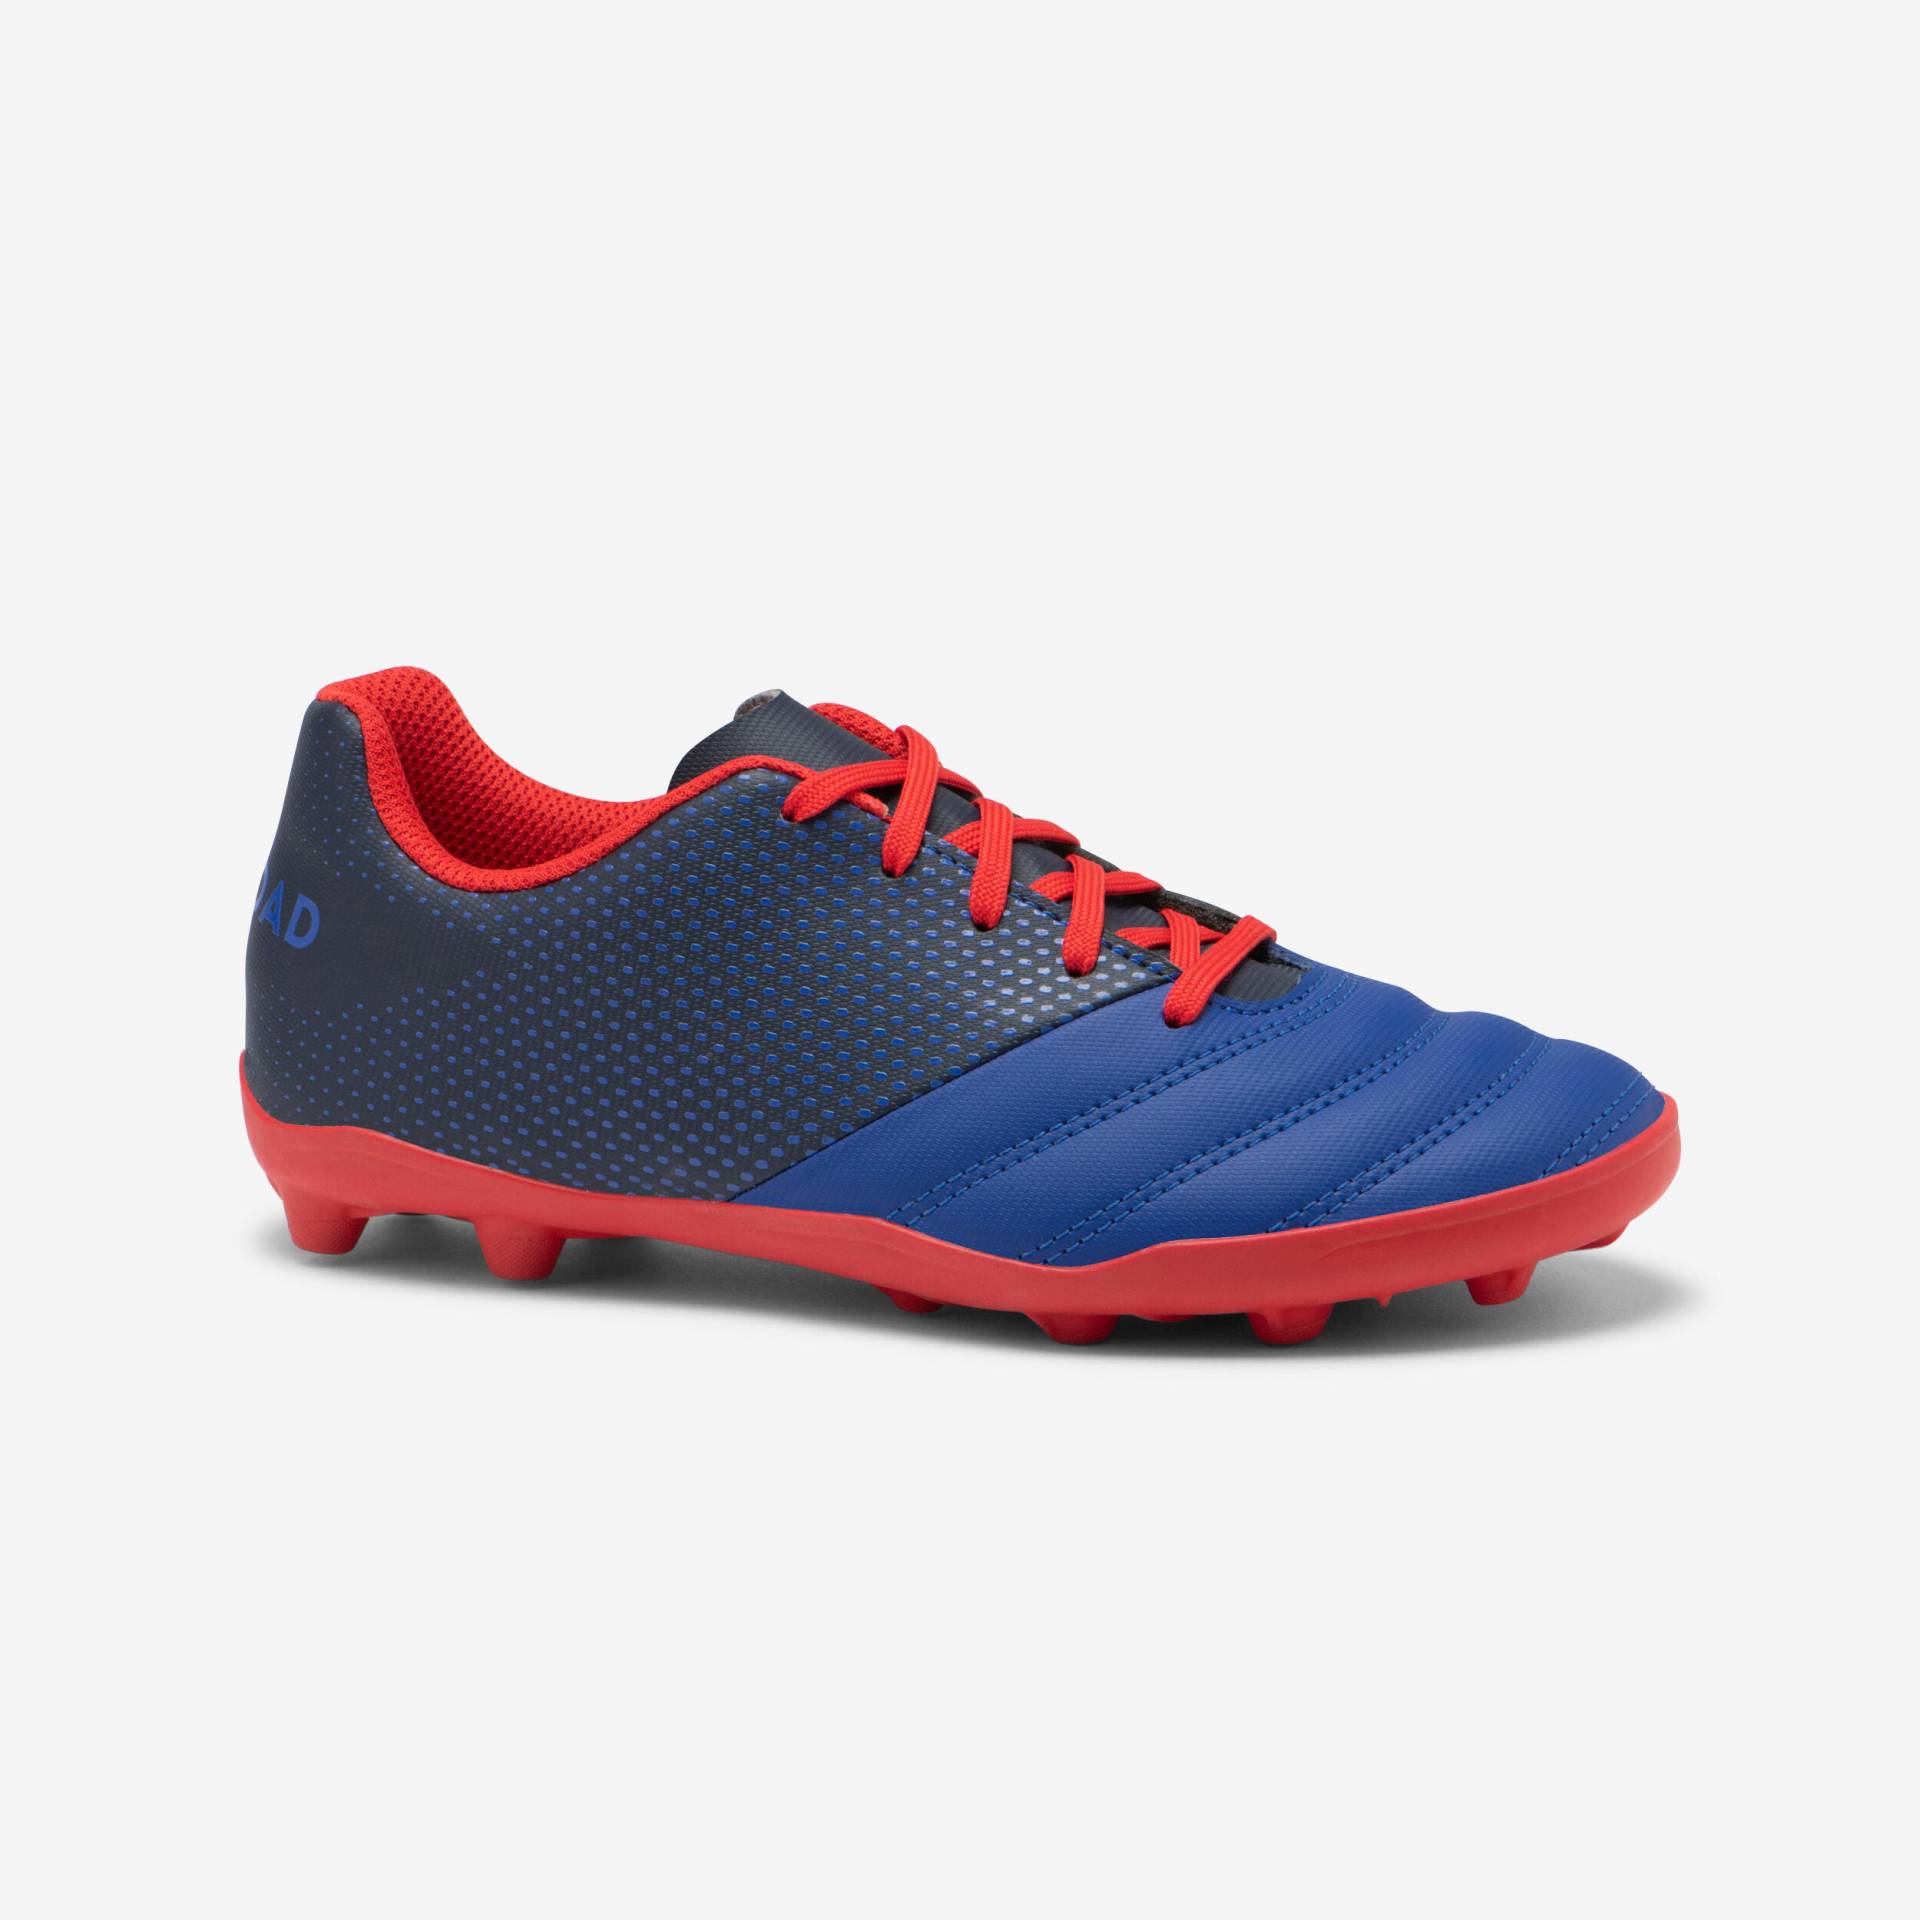 Kinder Rugby Schuhe FG (trockener Untergrund) - Skill 100 blau/rot von OFFLOAD